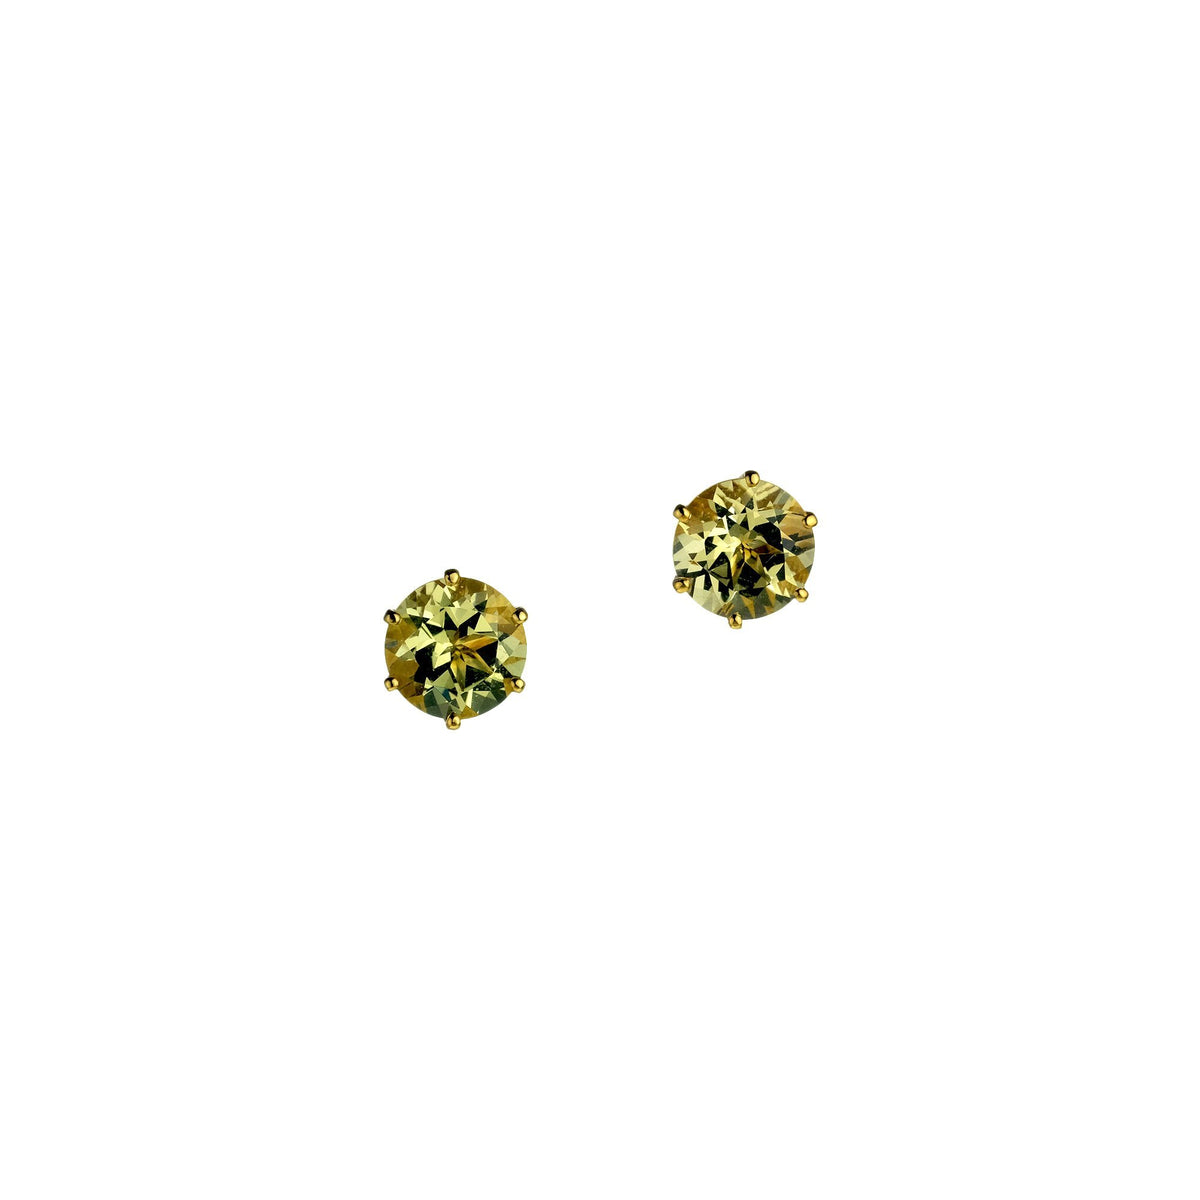 Golden Beryl Studs, 2.44 carats